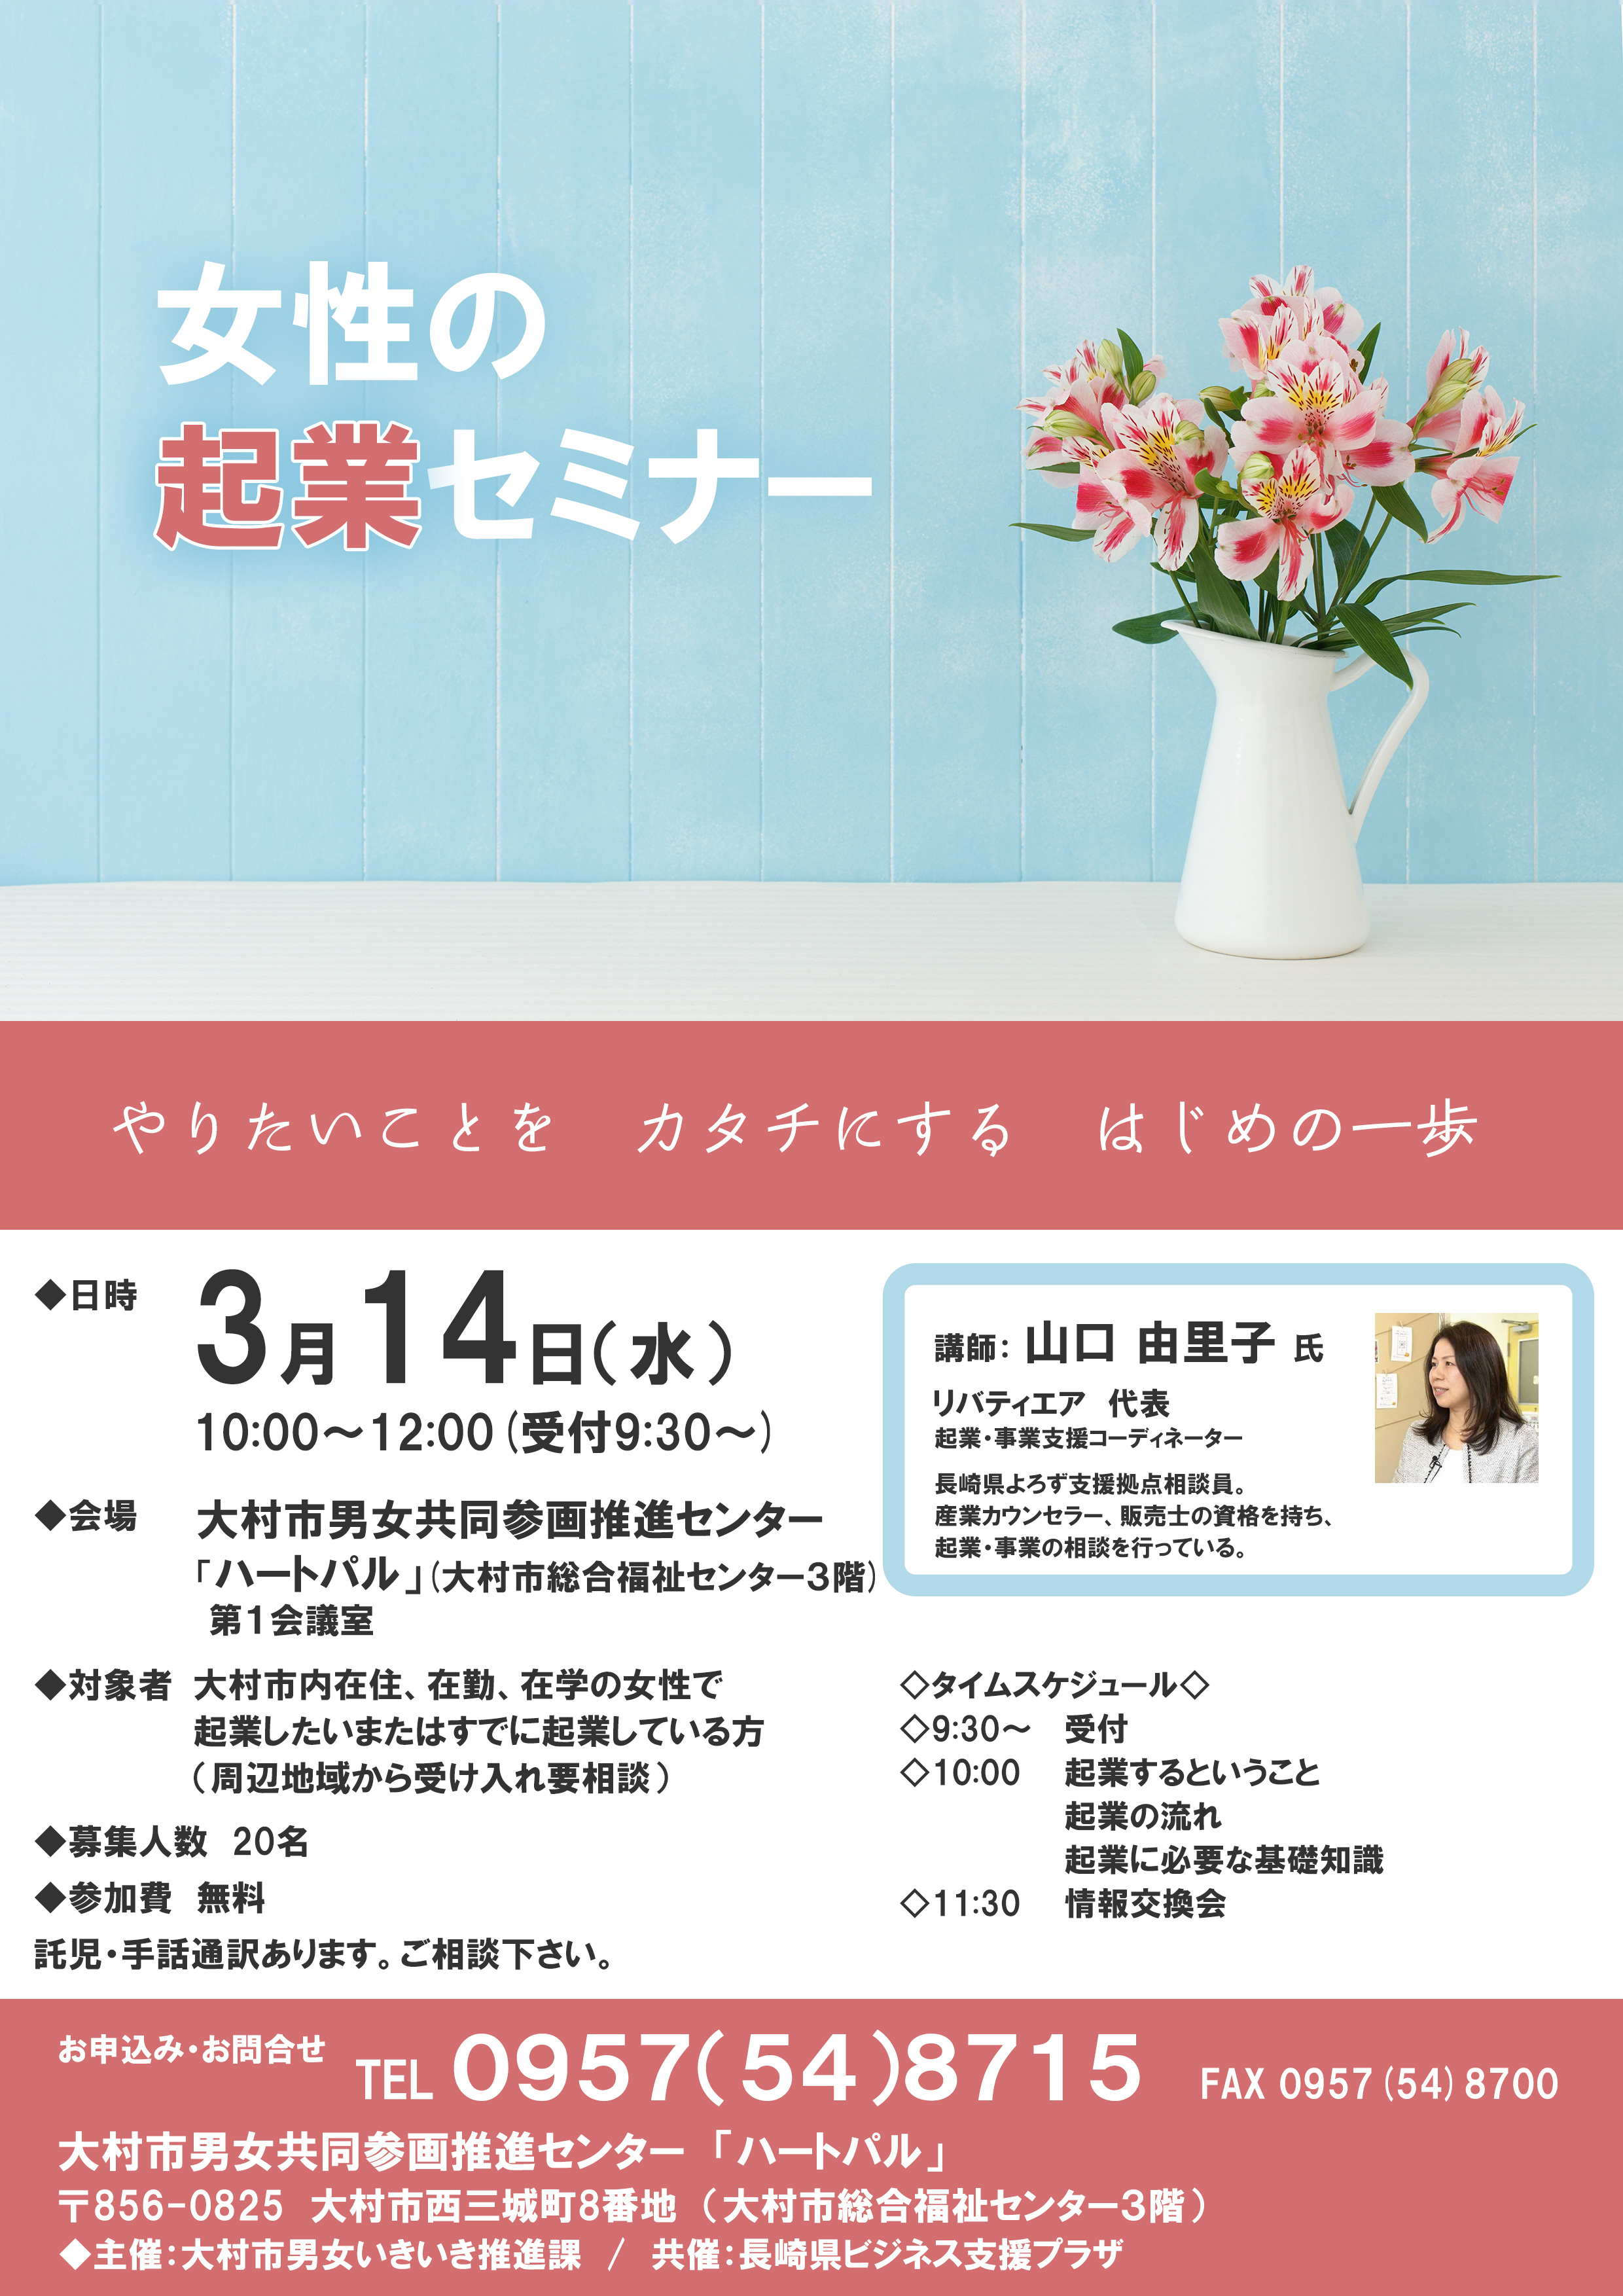 女性の起業セミナーのご案内【終了しました】 長崎県ビジネス支援プラザ